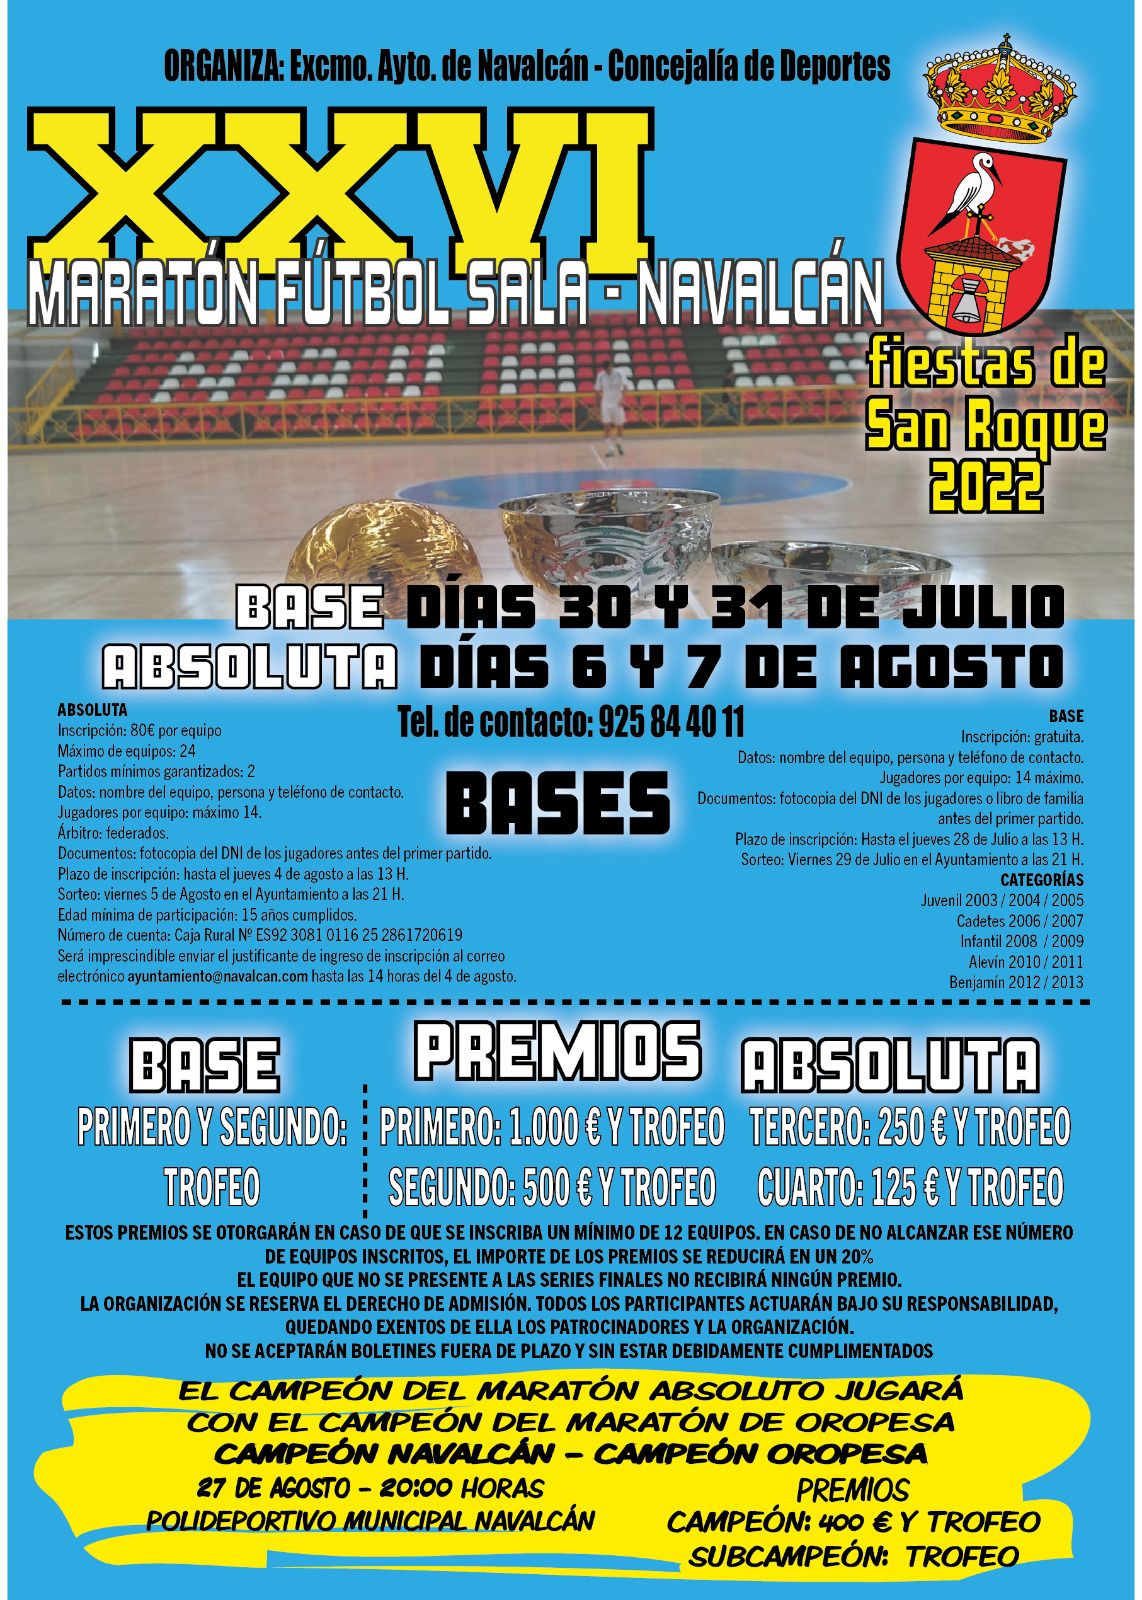 Fútbol Sala - Concejalía de Deportes del Ayuntamiento de Escalona